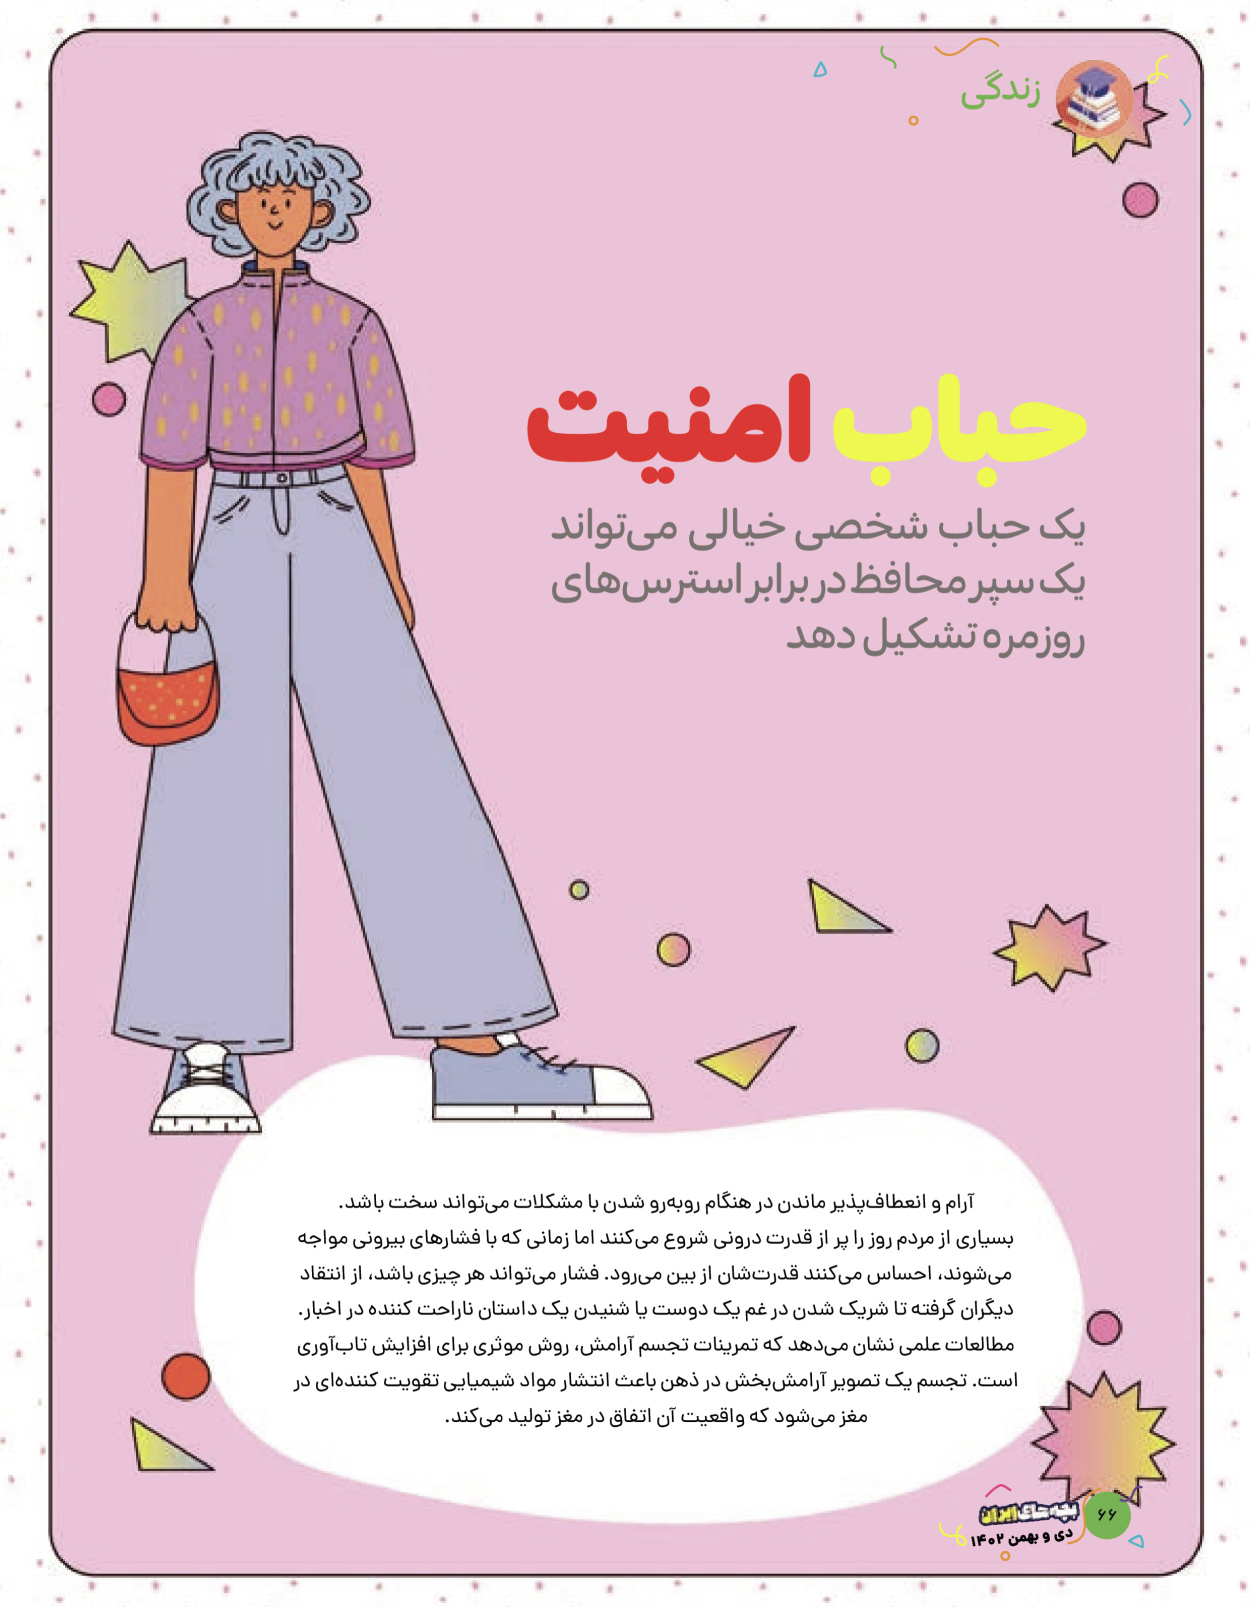 ماه نامه بچه های ایران - شماره نه - ۰۹ بهمن ۱۴۰۲ - صفحه ۶۶